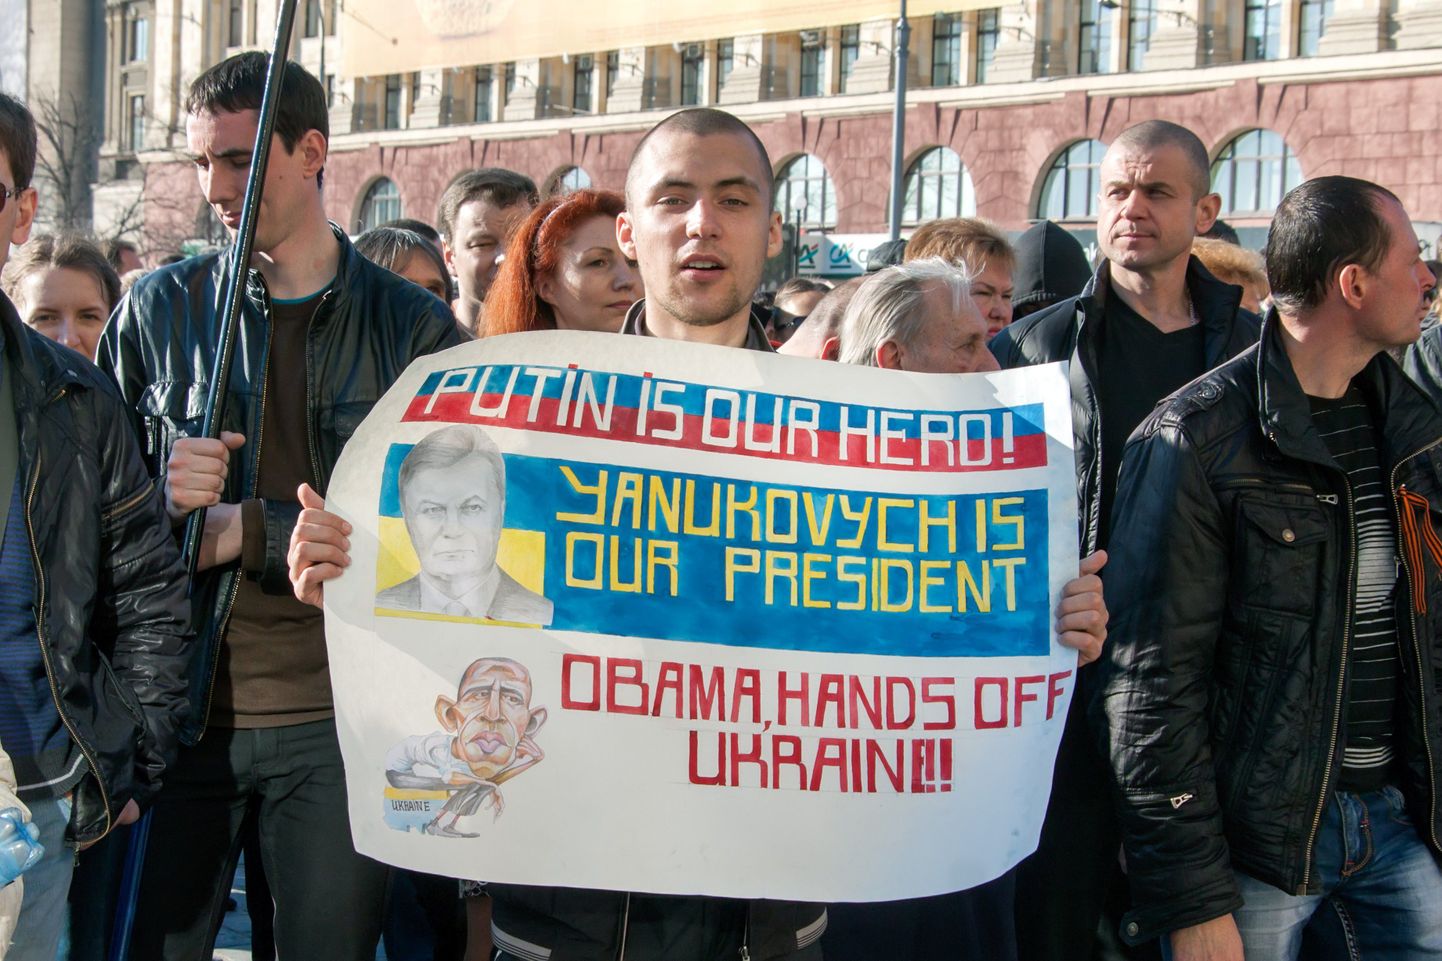 Harkivis kutsusid venemeelsed Putinit ja Janukovõtšit appi. Kiri plakatil: «Putin on meie kangelane! Janukovõtš on meie president. Obama, käed eemale Ukrainast!»